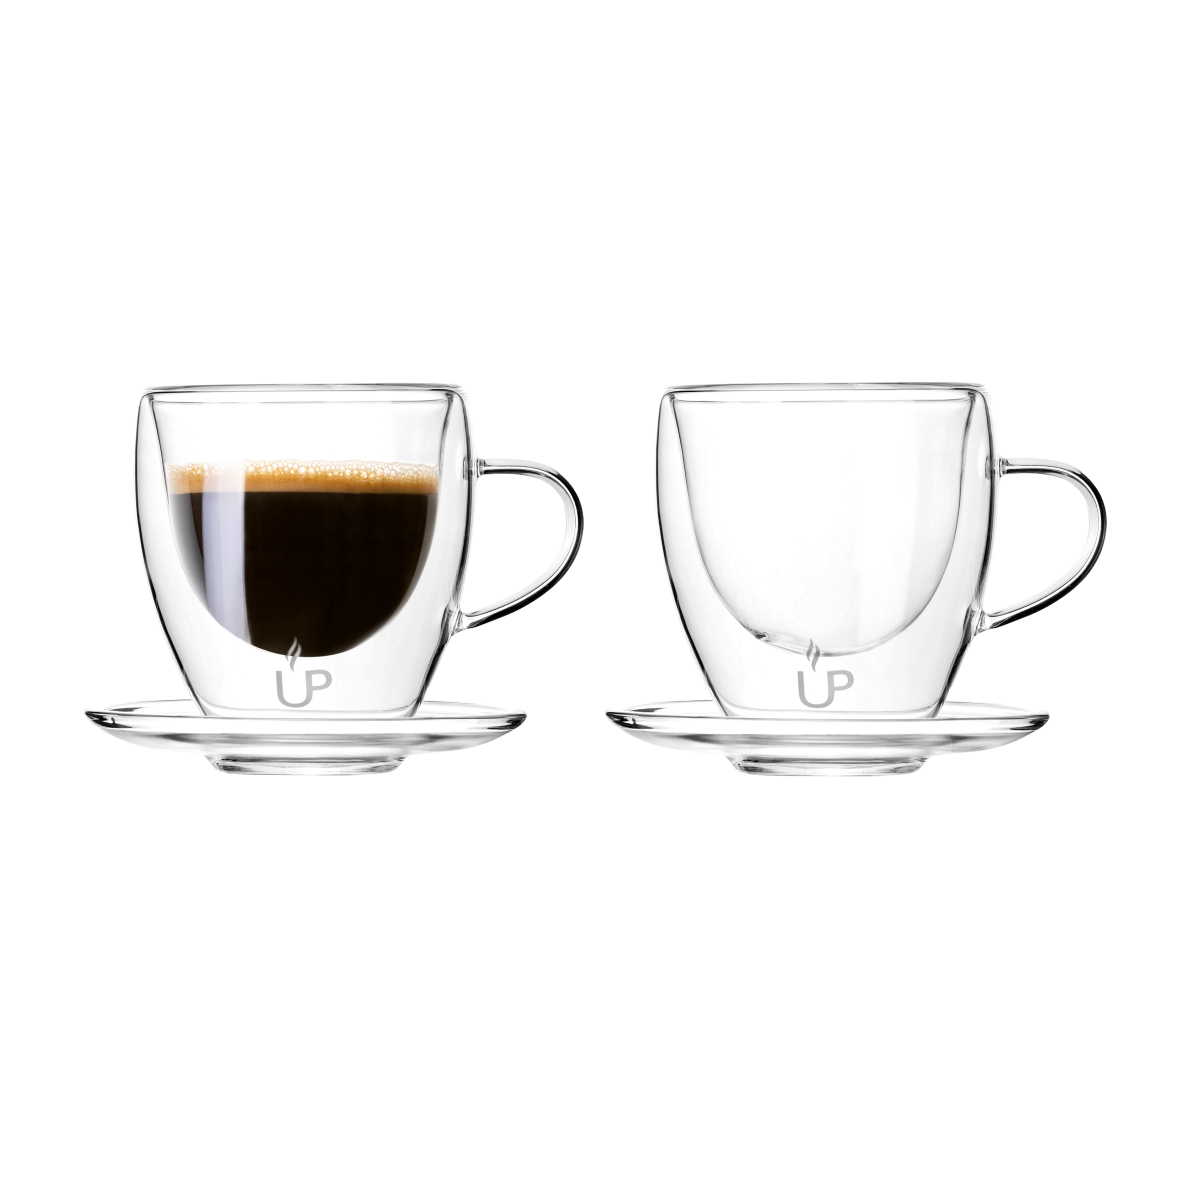 Çift Cidarlı Kulplu Espresso Kahve Bardağı Seti 4 Parça 2 Kişilik